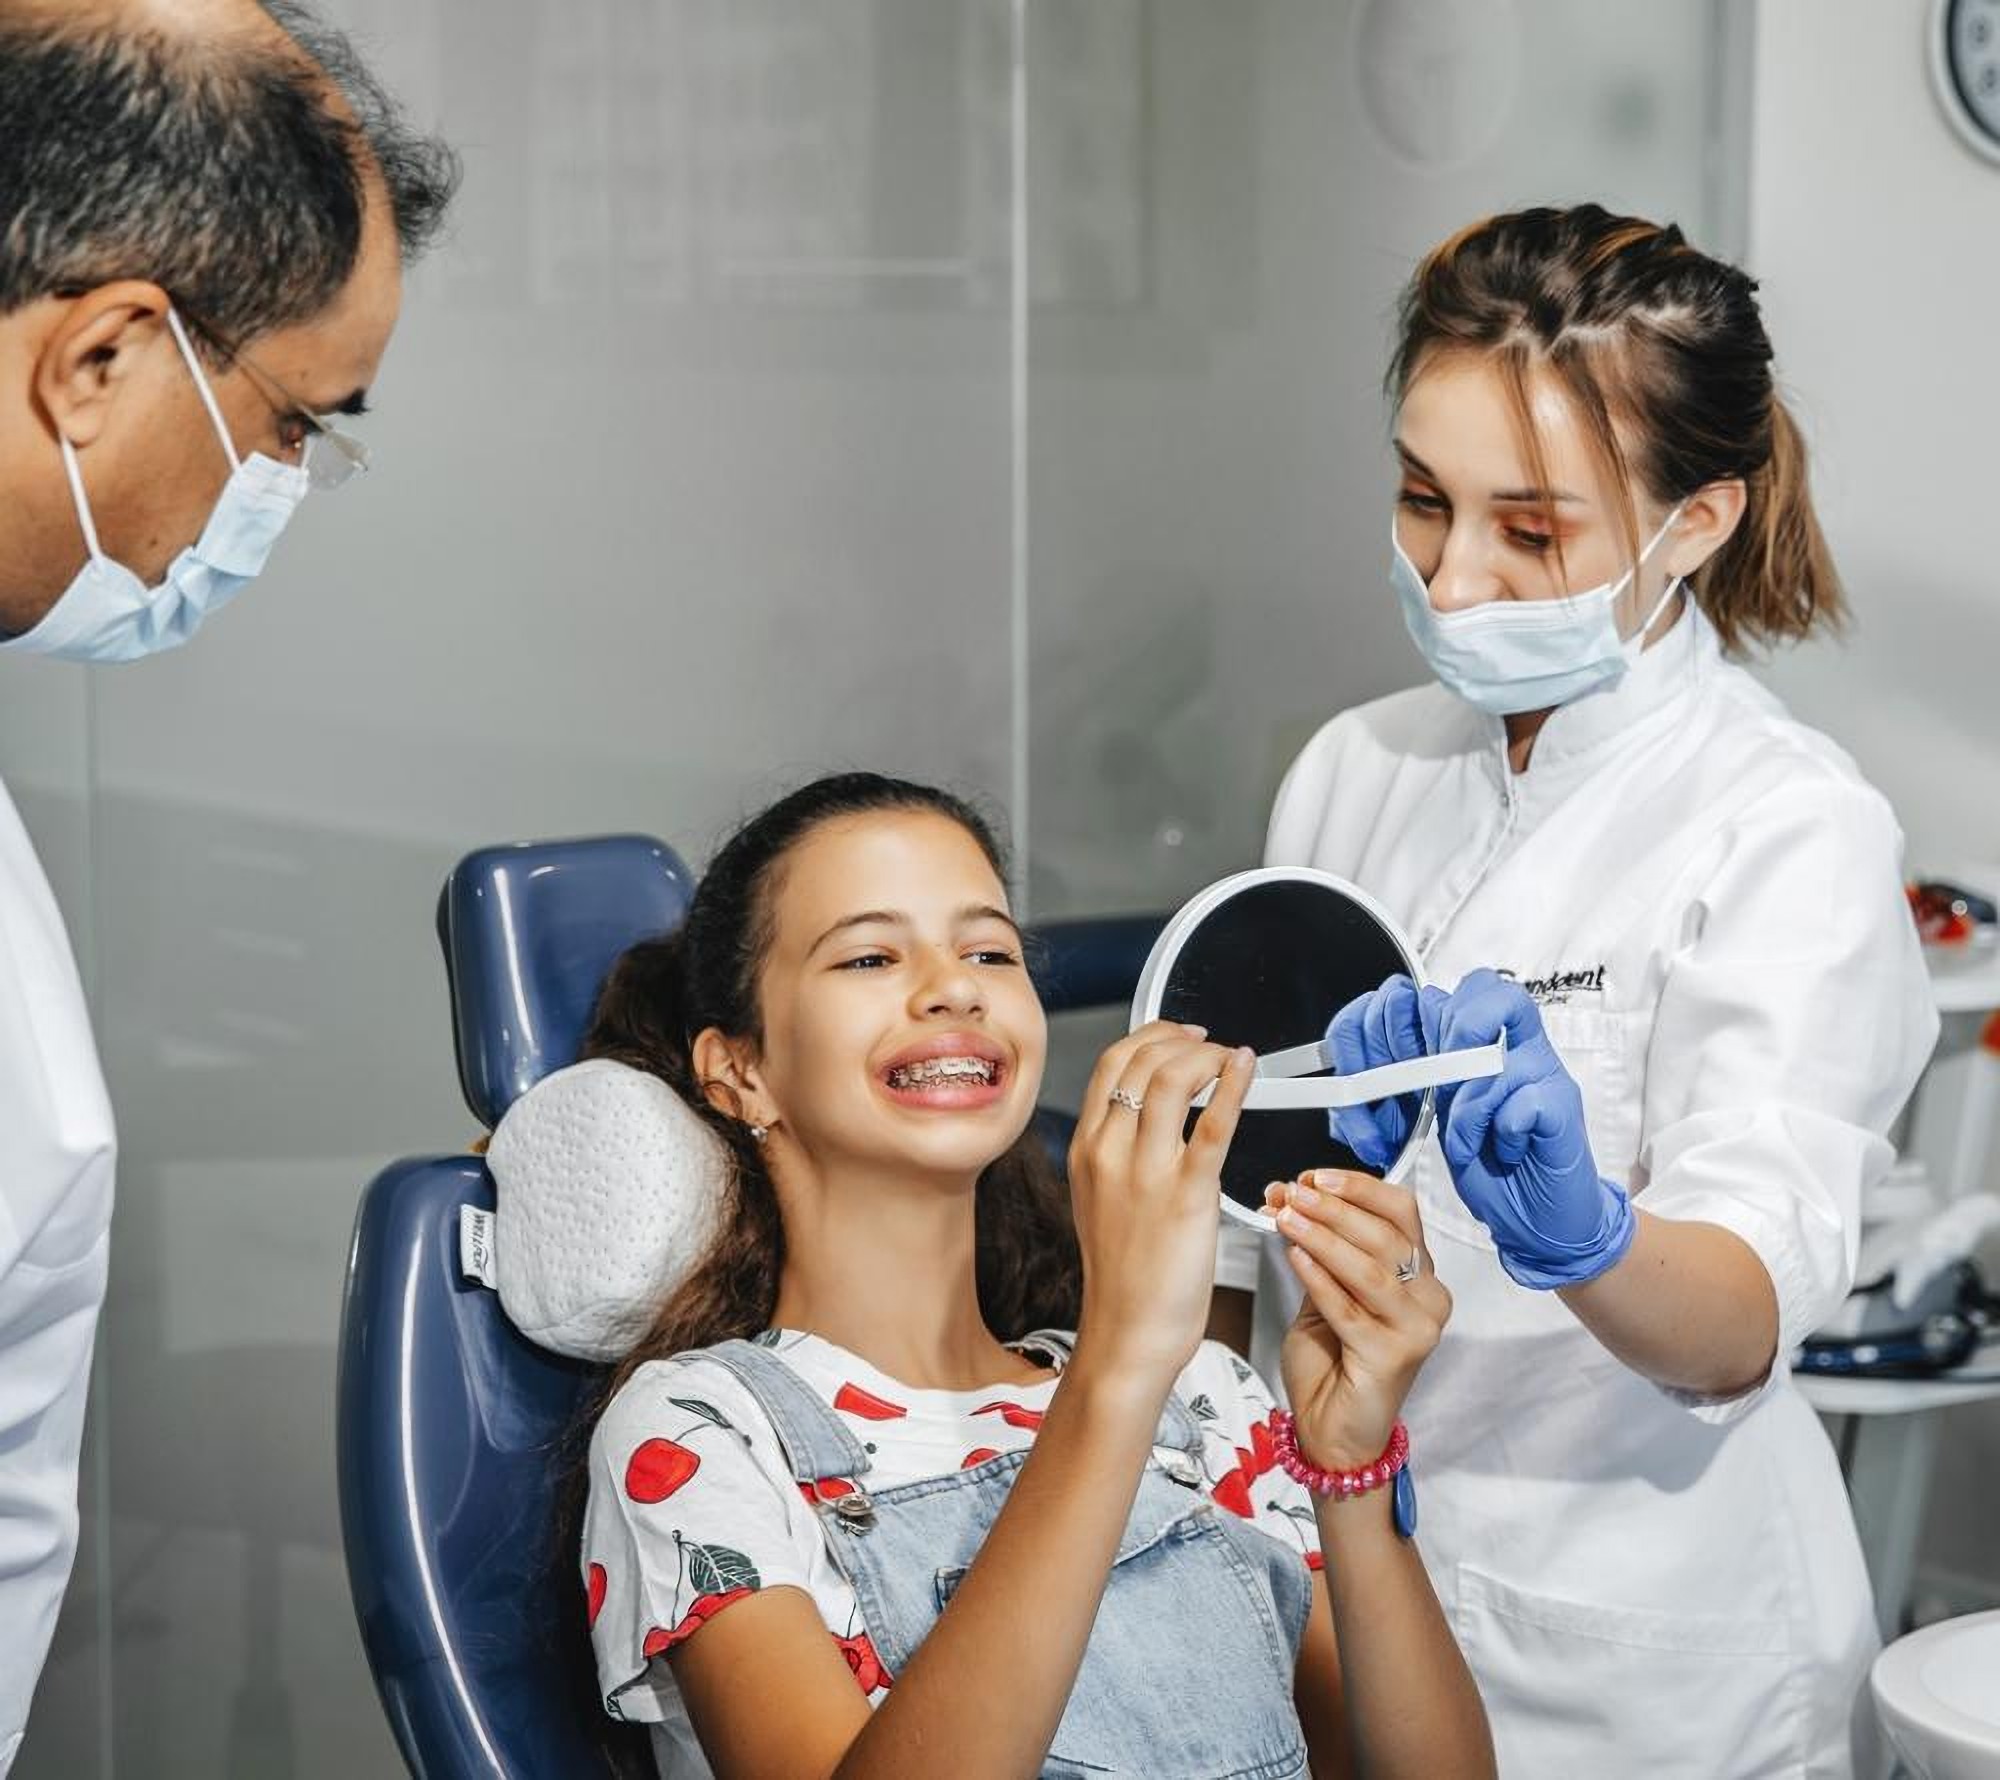 Детская стоматология в клинике Granddent в Одессе Украина